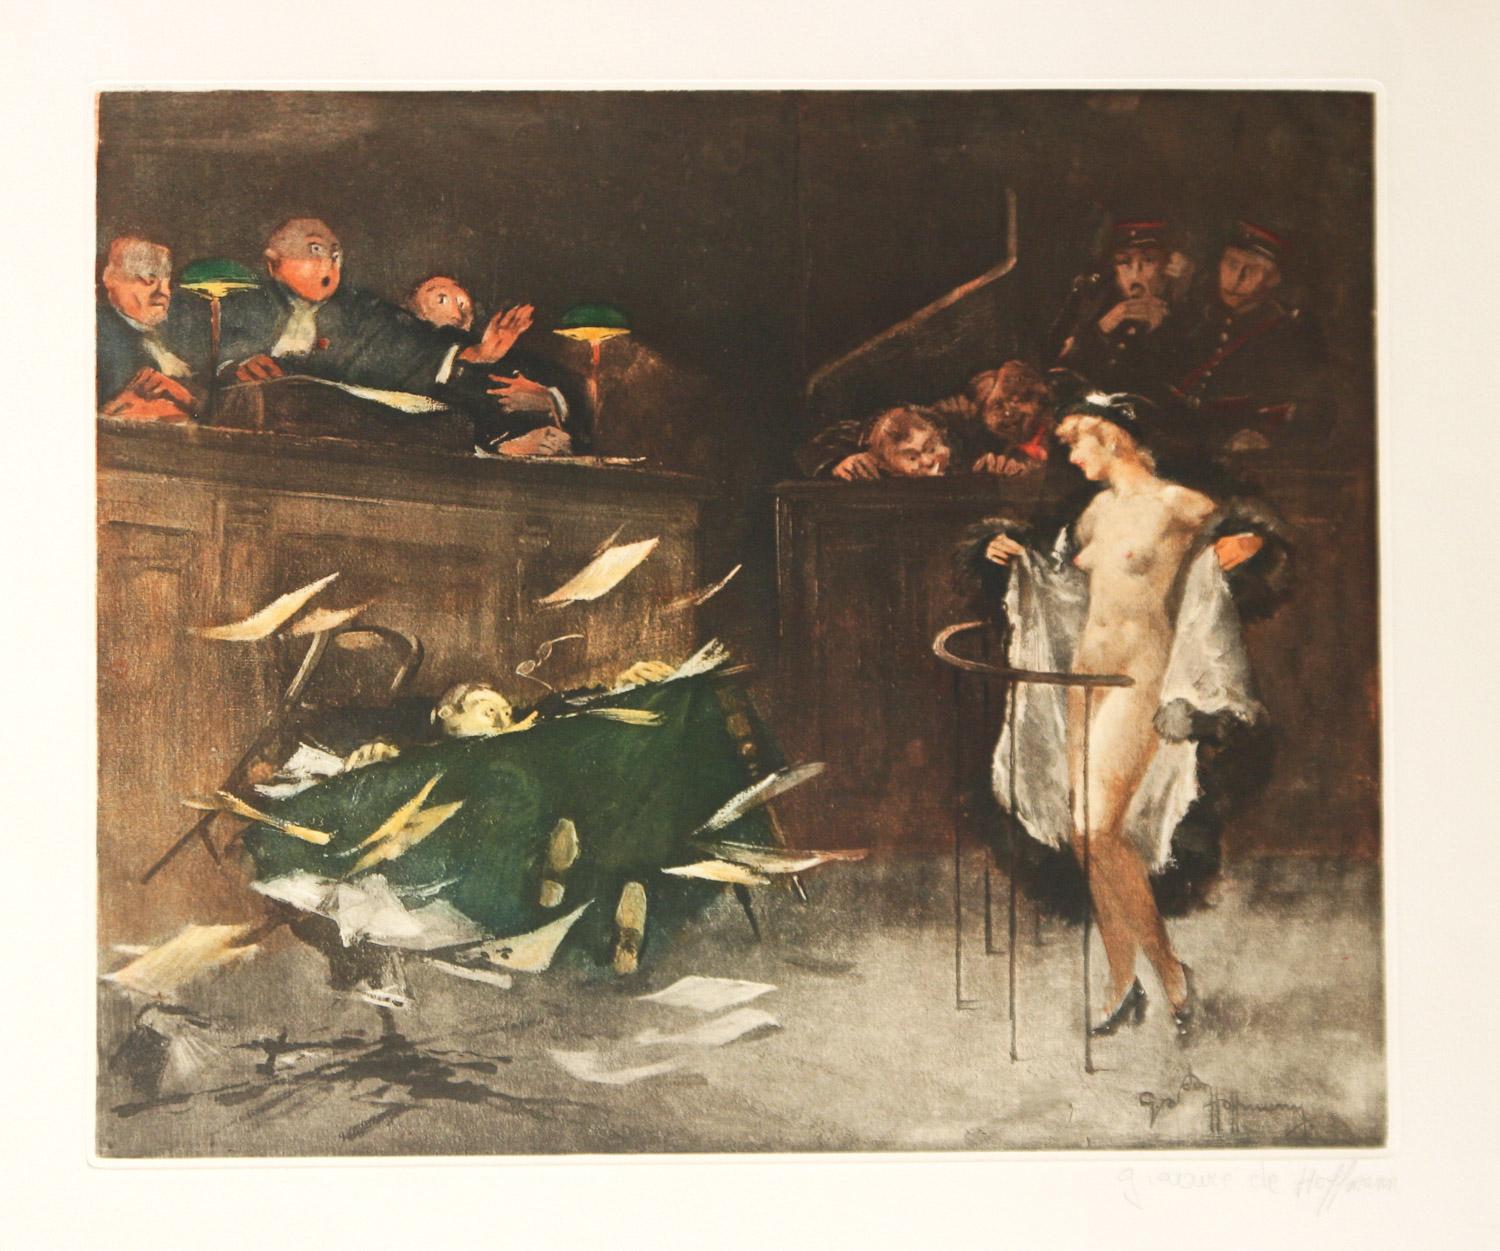       Der französische Künstler Gaston Hoffman. Hoffman ( 1883 - 1960 ) war ein Maler, Dekorateur, Karikaturist und Illustrator, der für seine satirischen französischen Gerichtsszenen bekannt ist. Hier gibt es drei zusammenhängende Szenen. Die erste